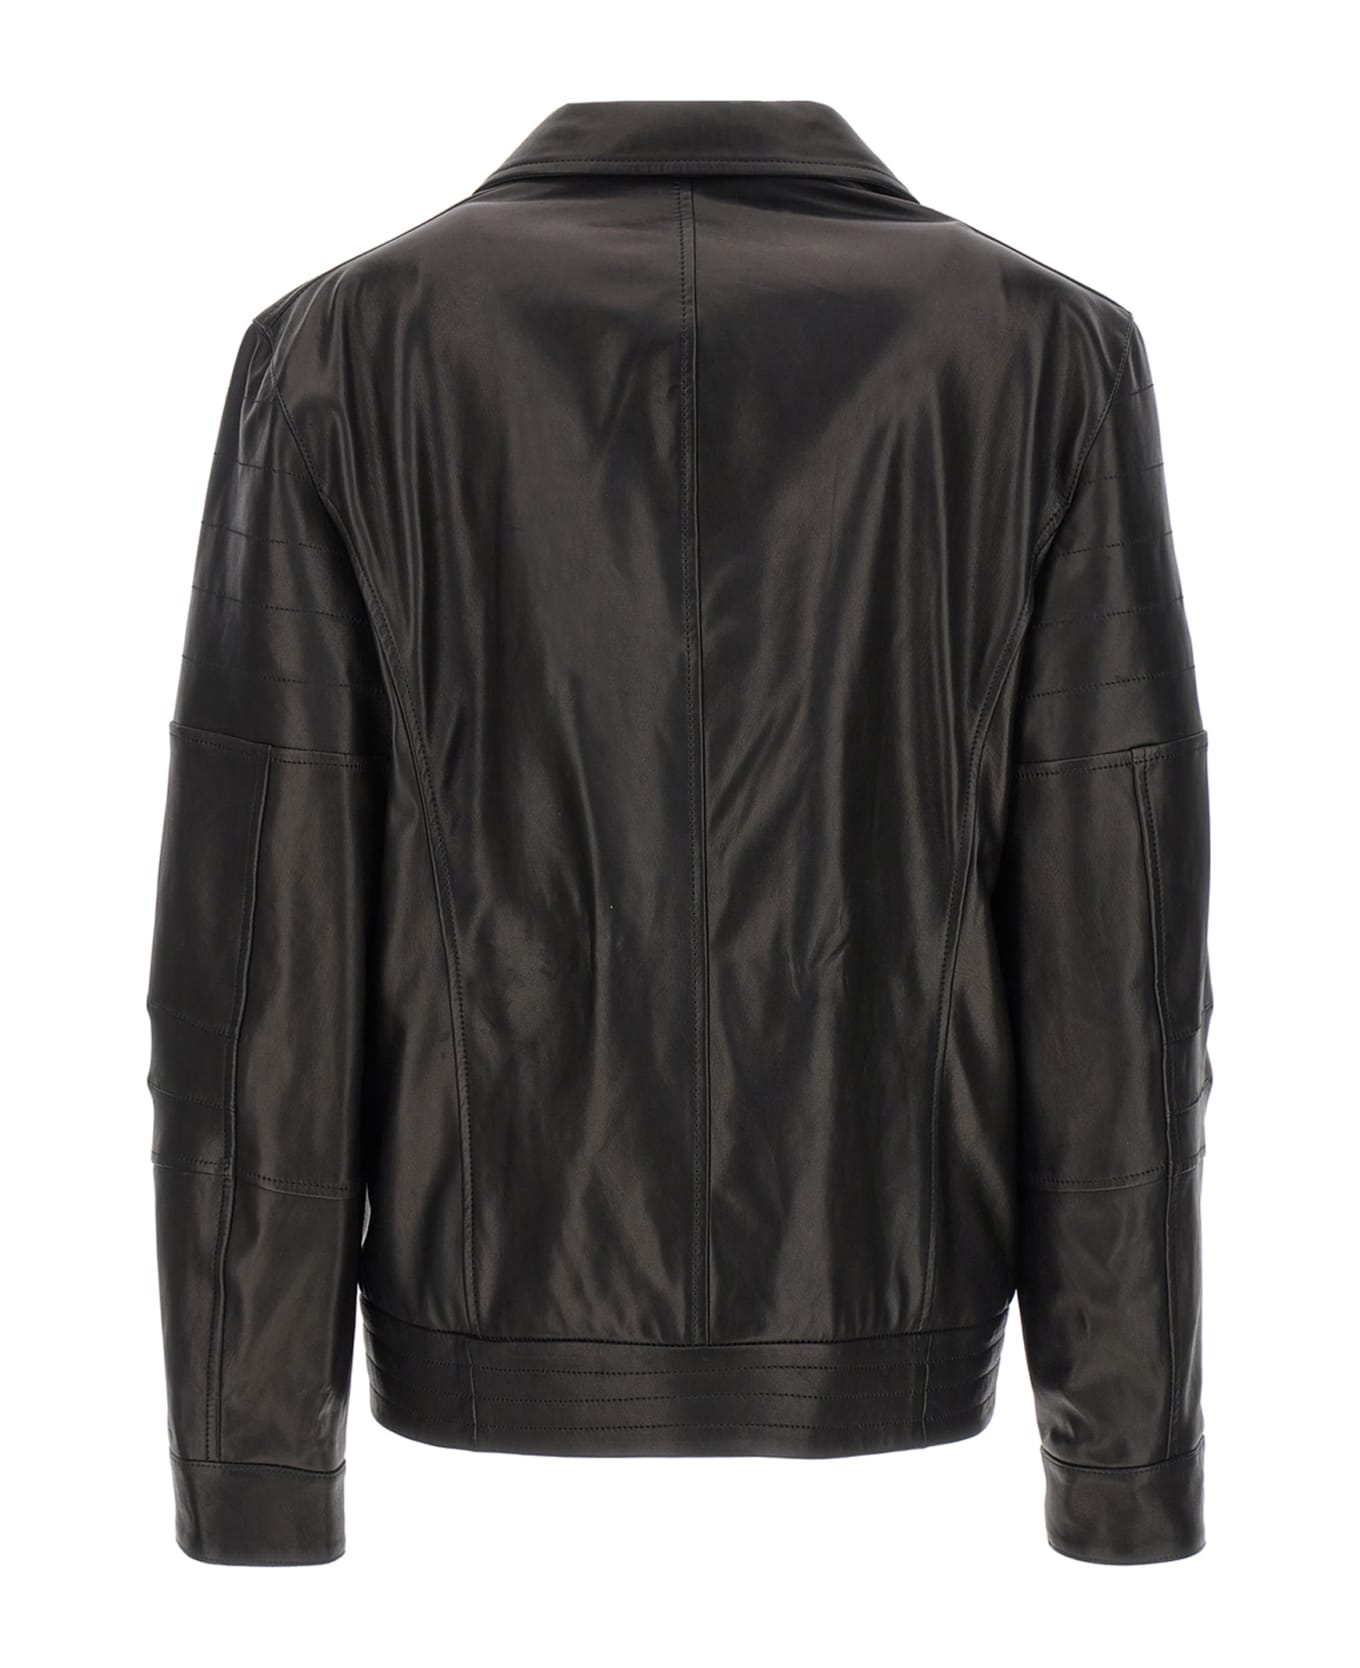 Brunello Cucinelli Leather Biker Jacket - Black